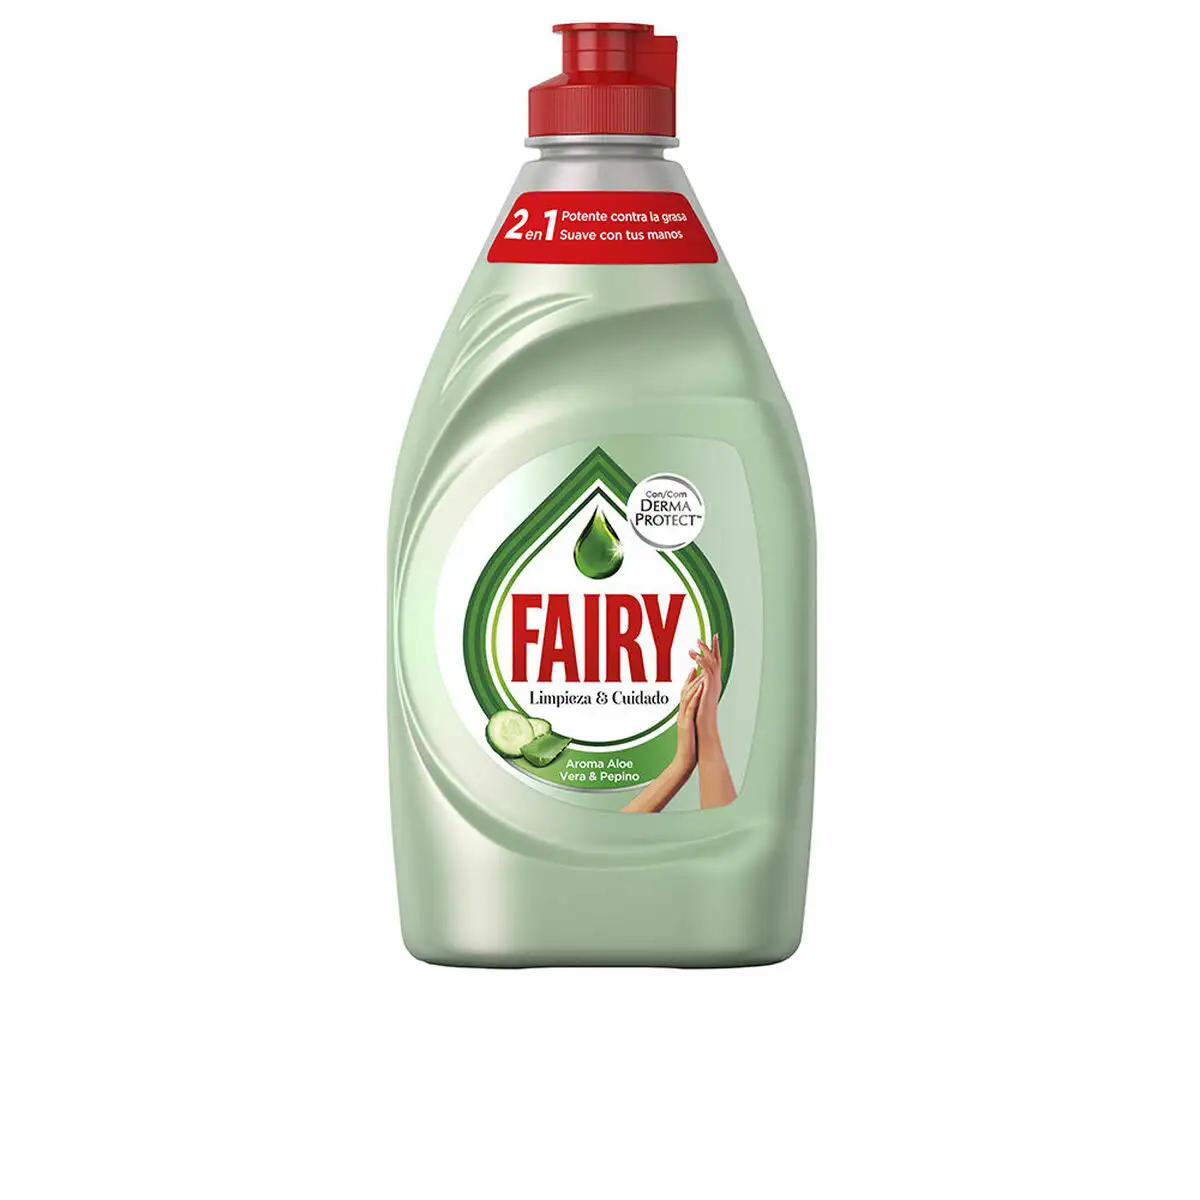 Lave vaisselle liquide manuel fairy derma protect aloe vera 340 ml_7095. Bienvenue chez DIAYTAR SENEGAL - Où le Shopping Devient un Plaisir. Découvrez notre boutique en ligne et trouvez des trésors qui égaieront chaque jour de votre vie.